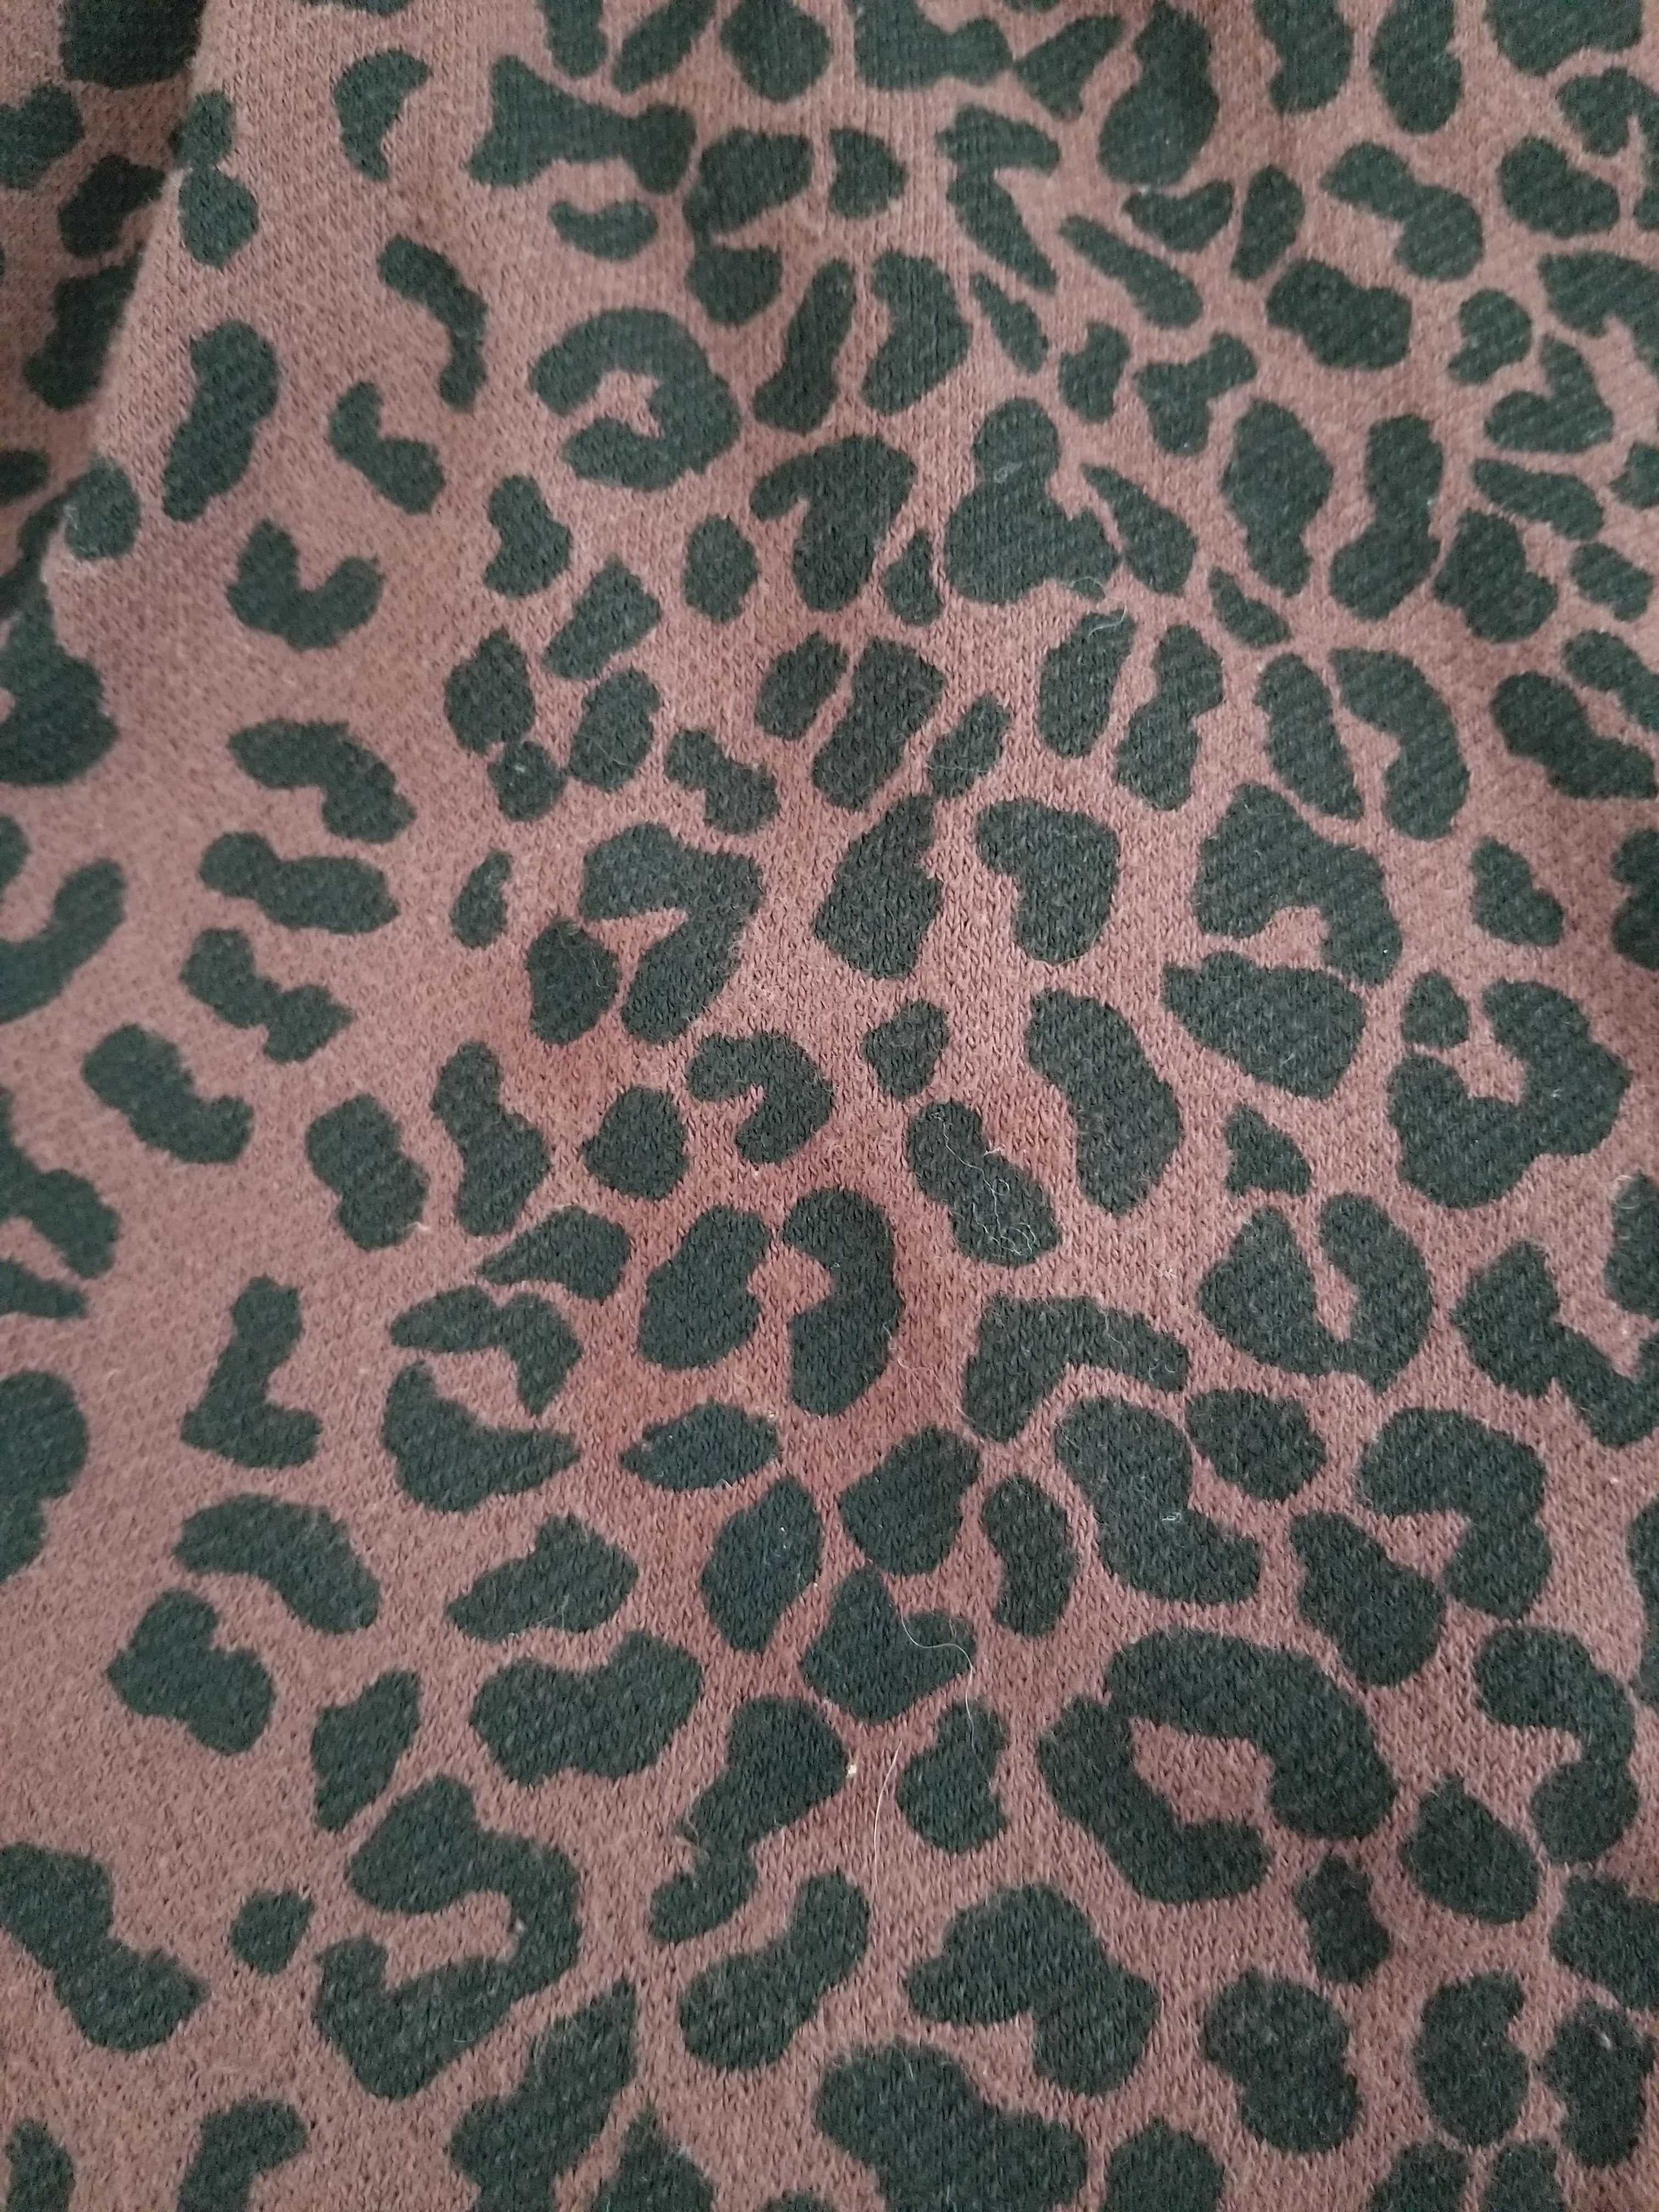 Visage Leopard Print Wrap Top